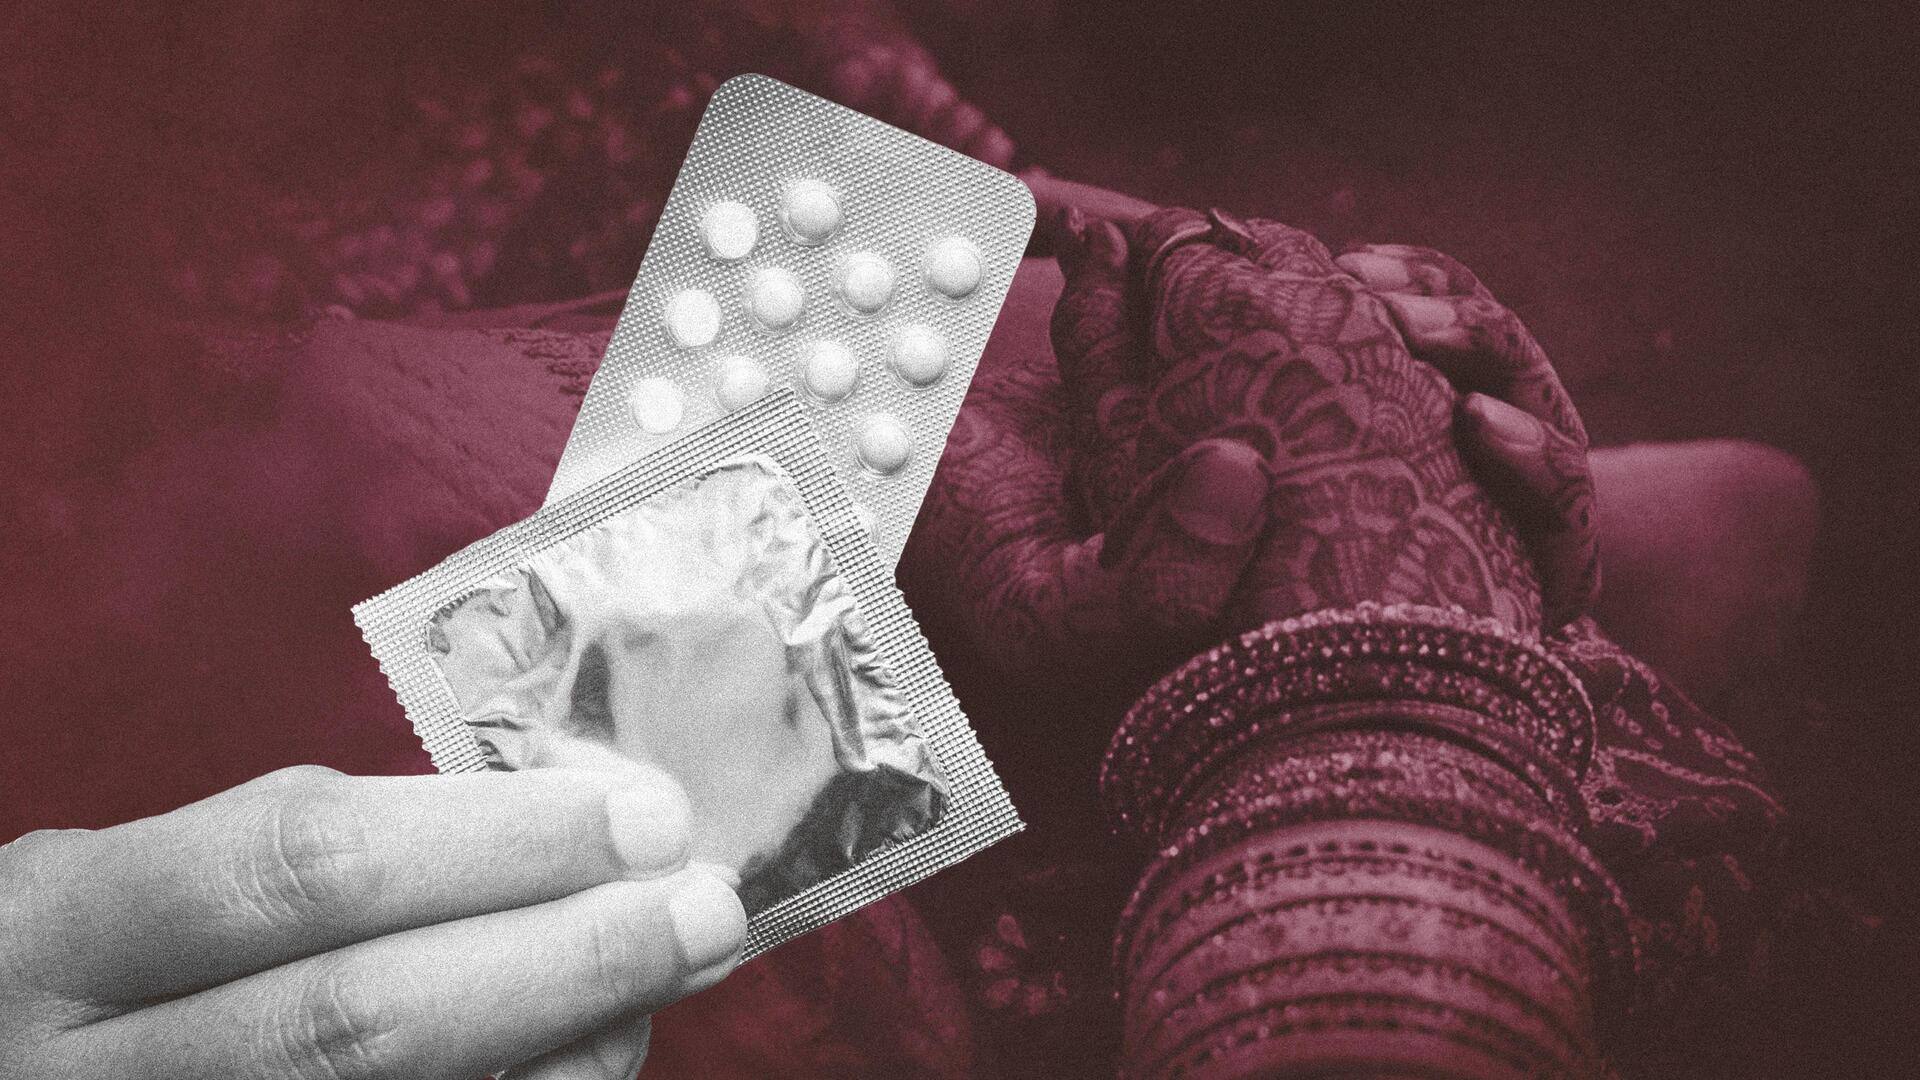 मध्य प्रदेश: सामूहिक विवाह में नव विवाहित जोड़ों को मिले कंडोम और गर्भनिरोधक गोलियां, जानिए मामला